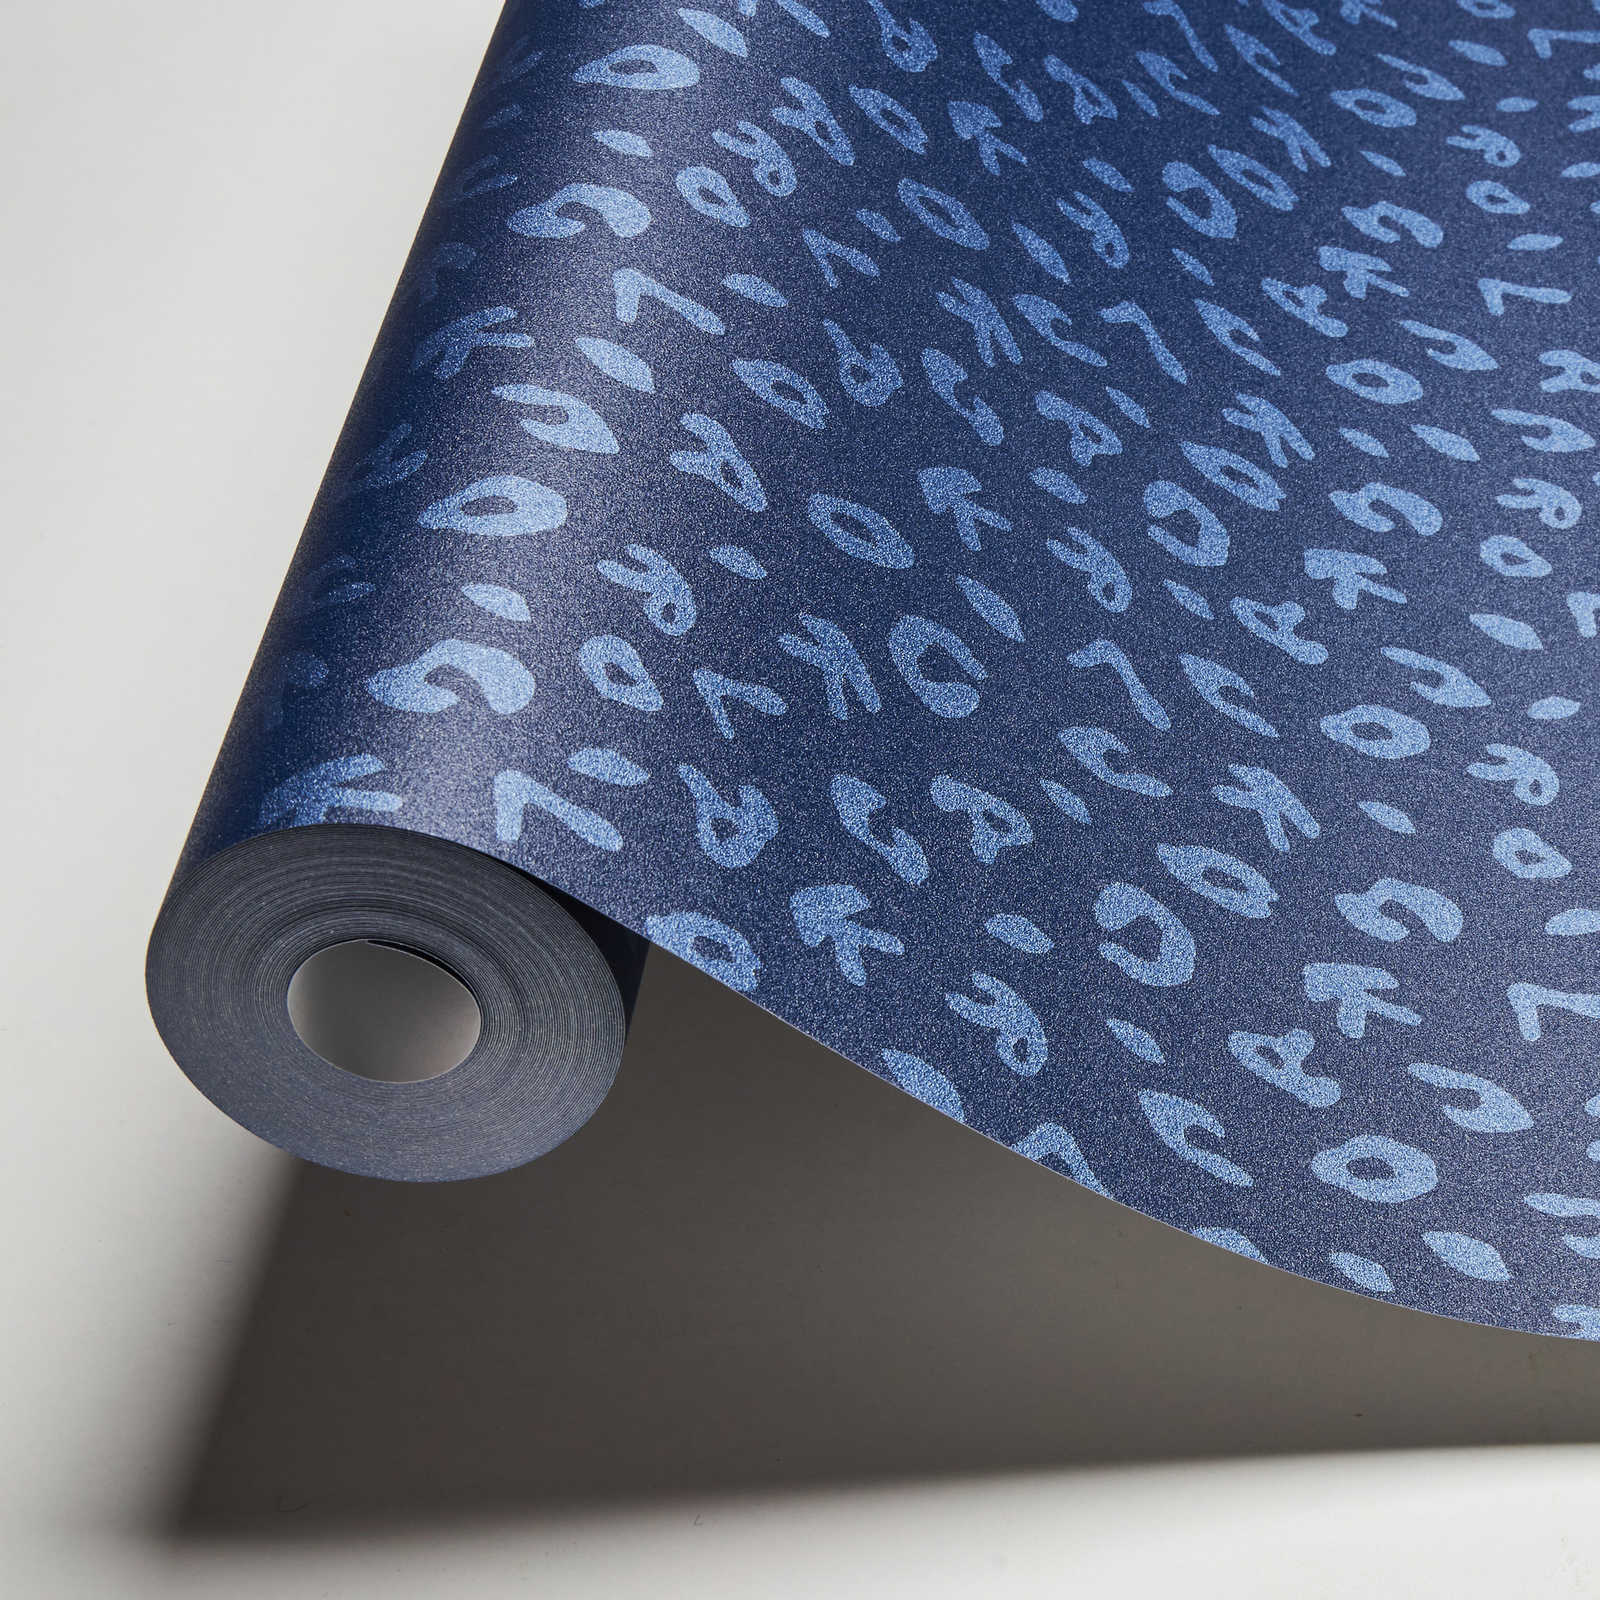             Karl LAGERFELD behang Animal Print - Blauw, Metallic
        